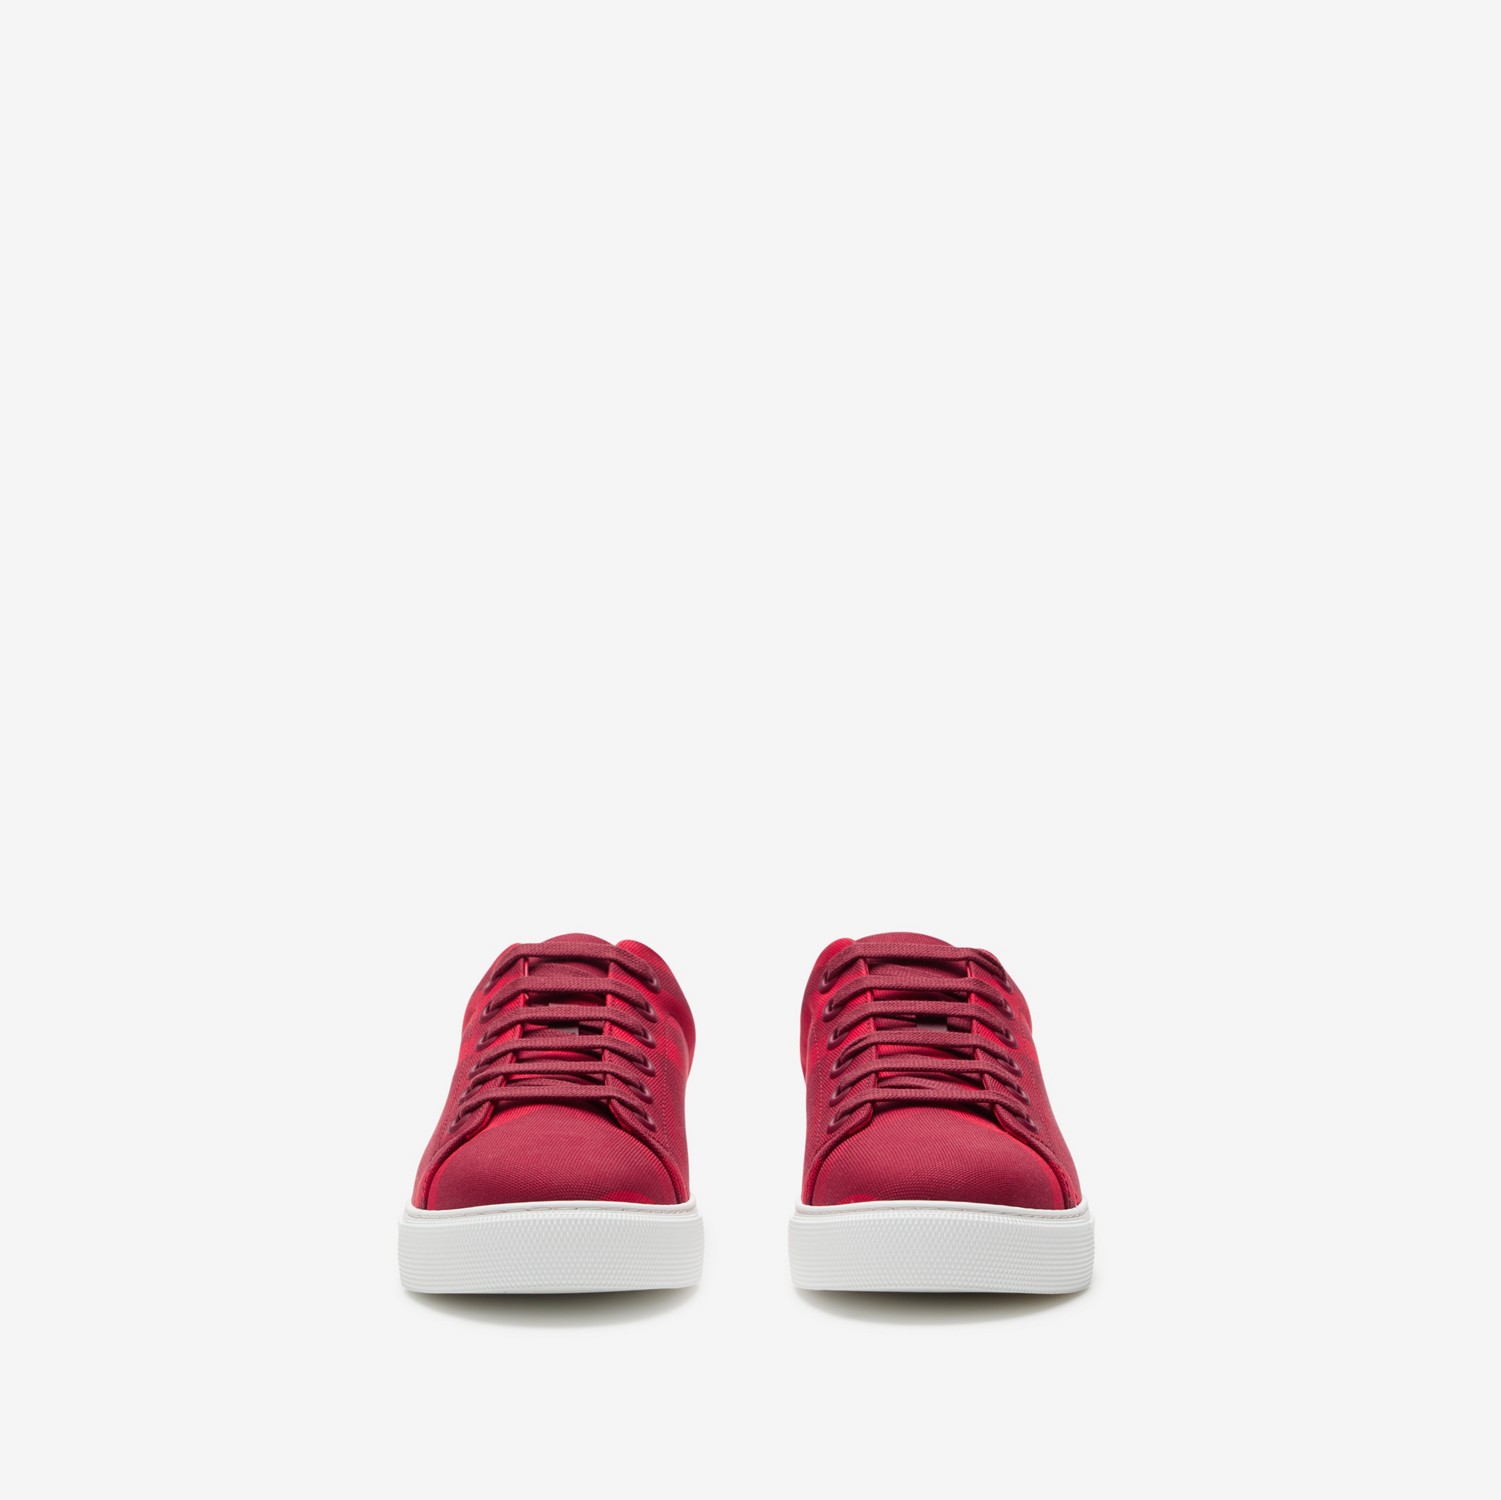 格纹棉质运动鞋 (树莓红) - 女士 | Burberry® 博柏利官网